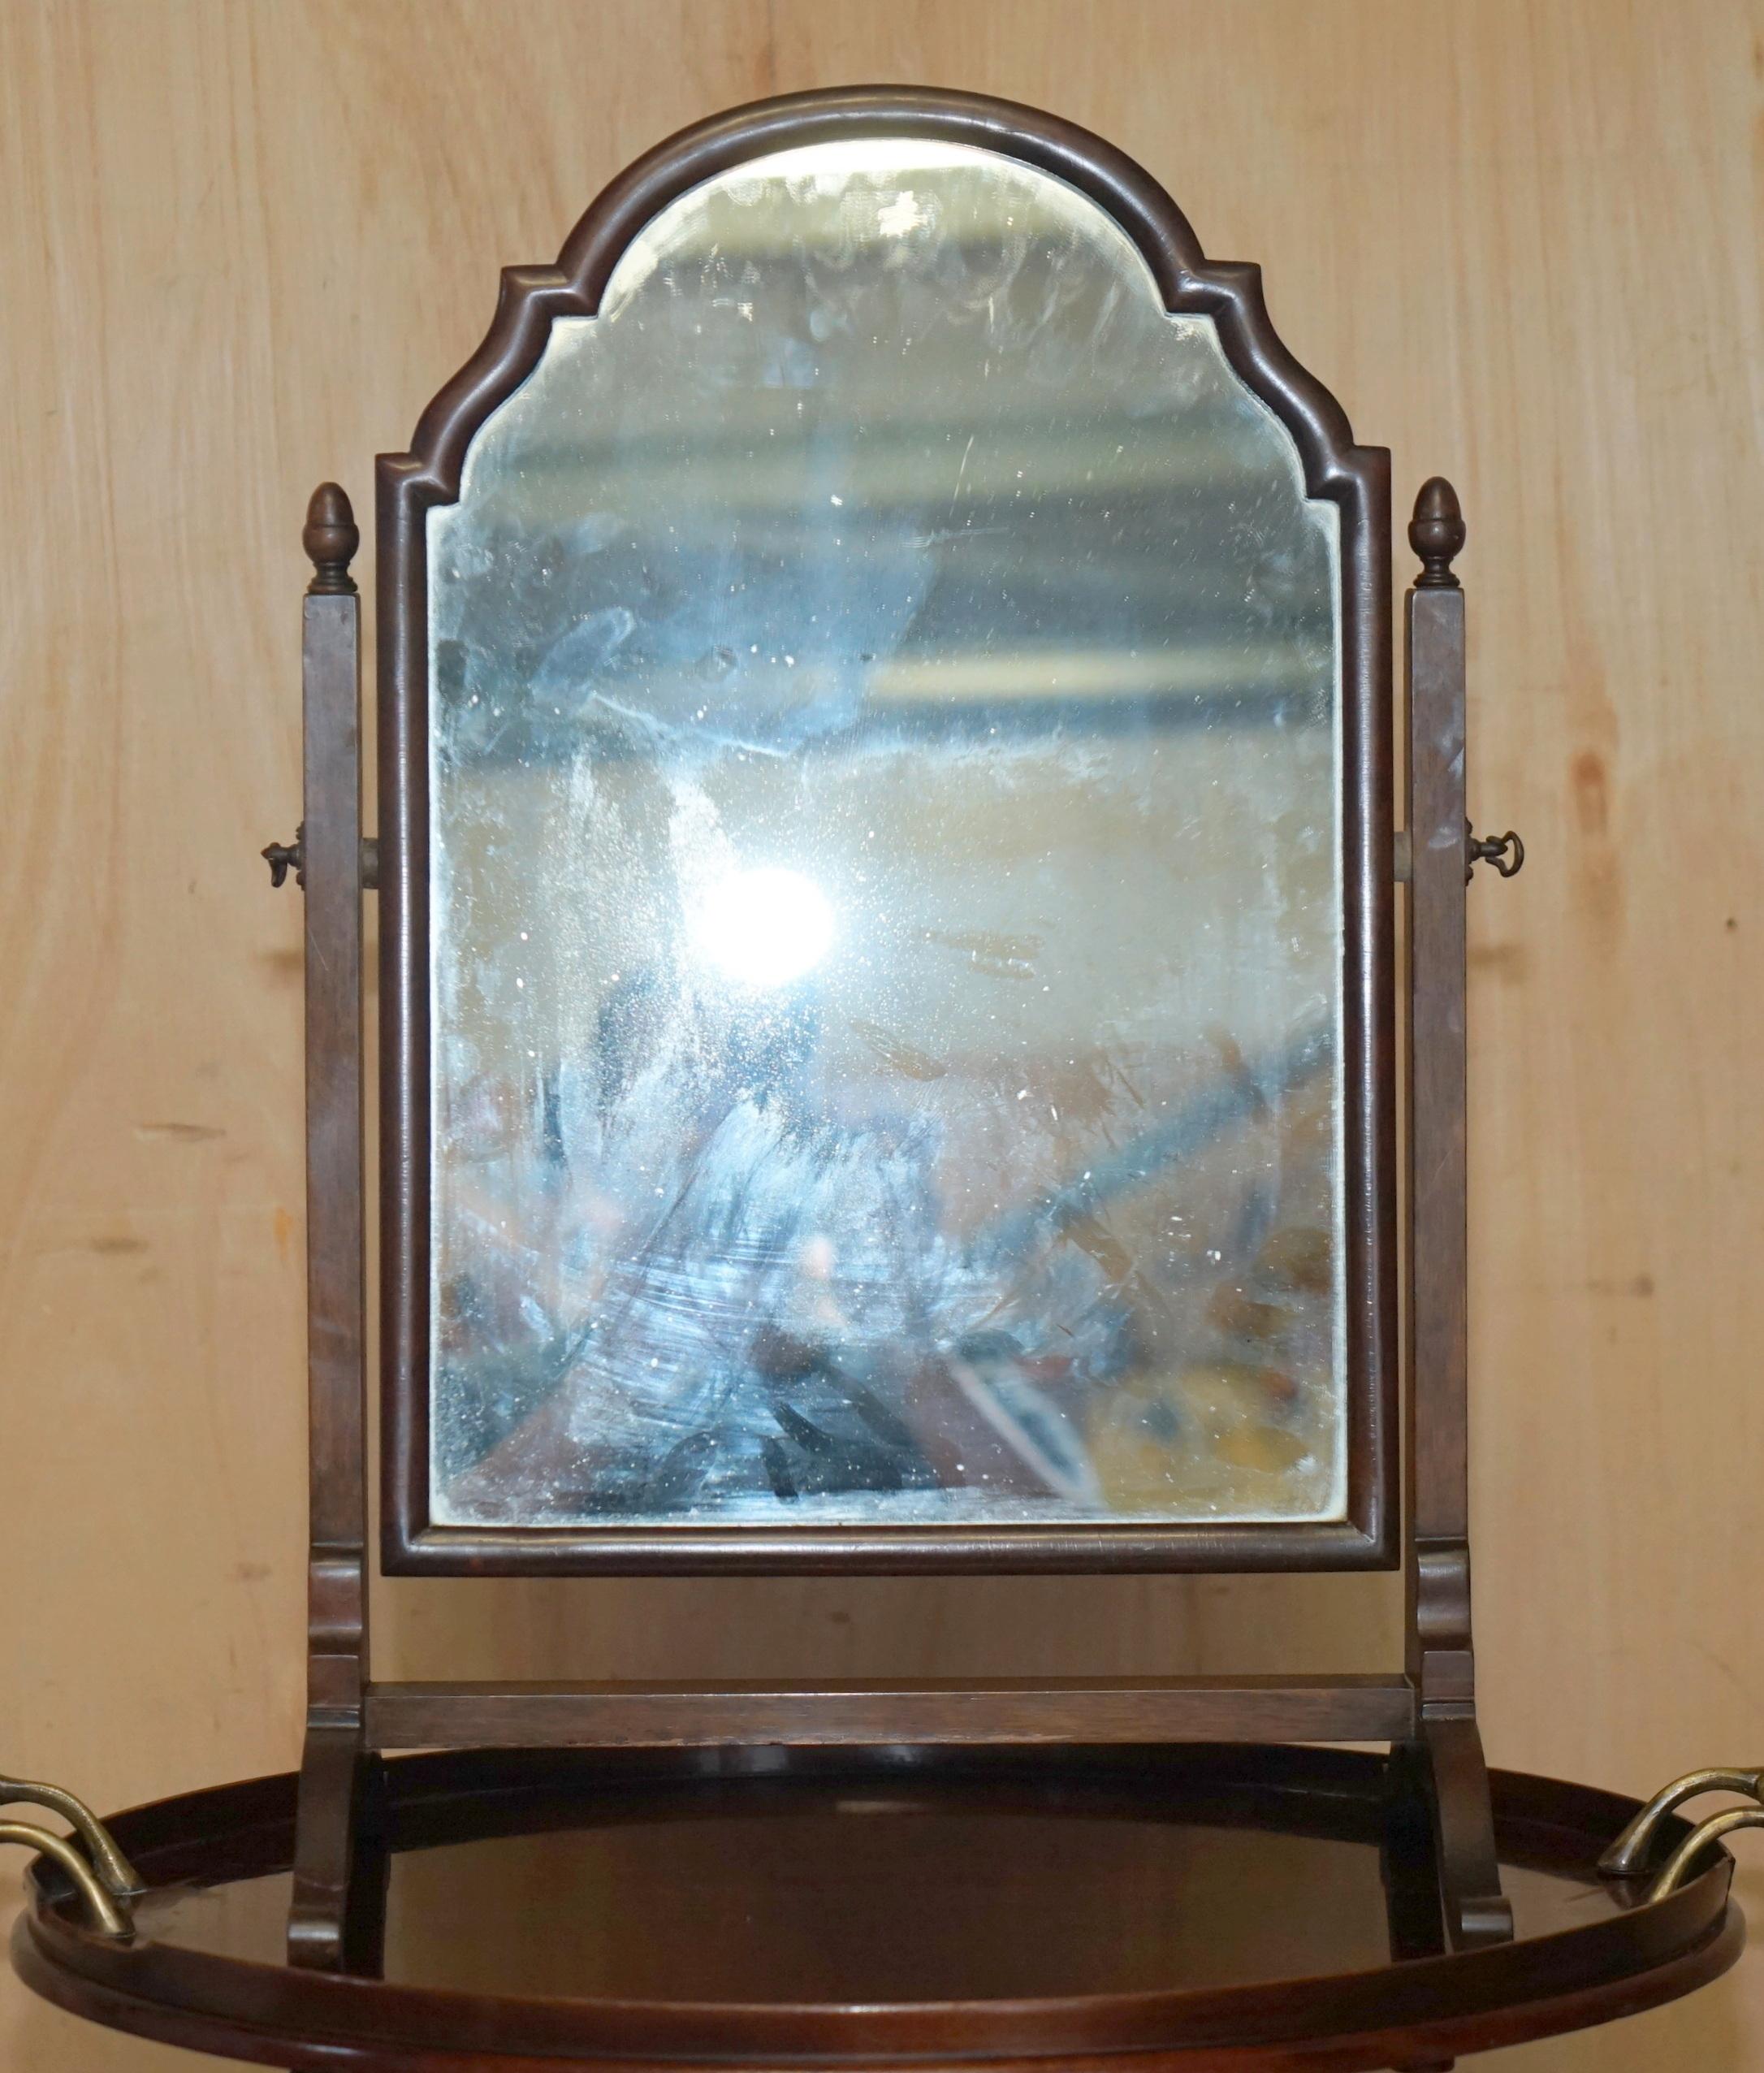 Royal House Antiques

The House Antiques a le plaisir d'offrir à la vente ce miroir de cheval en acajou victorien original datant de 1880 avec plaque de verre d'origine.

Veuillez noter que les frais de livraison indiqués ne sont qu'un guide, ils